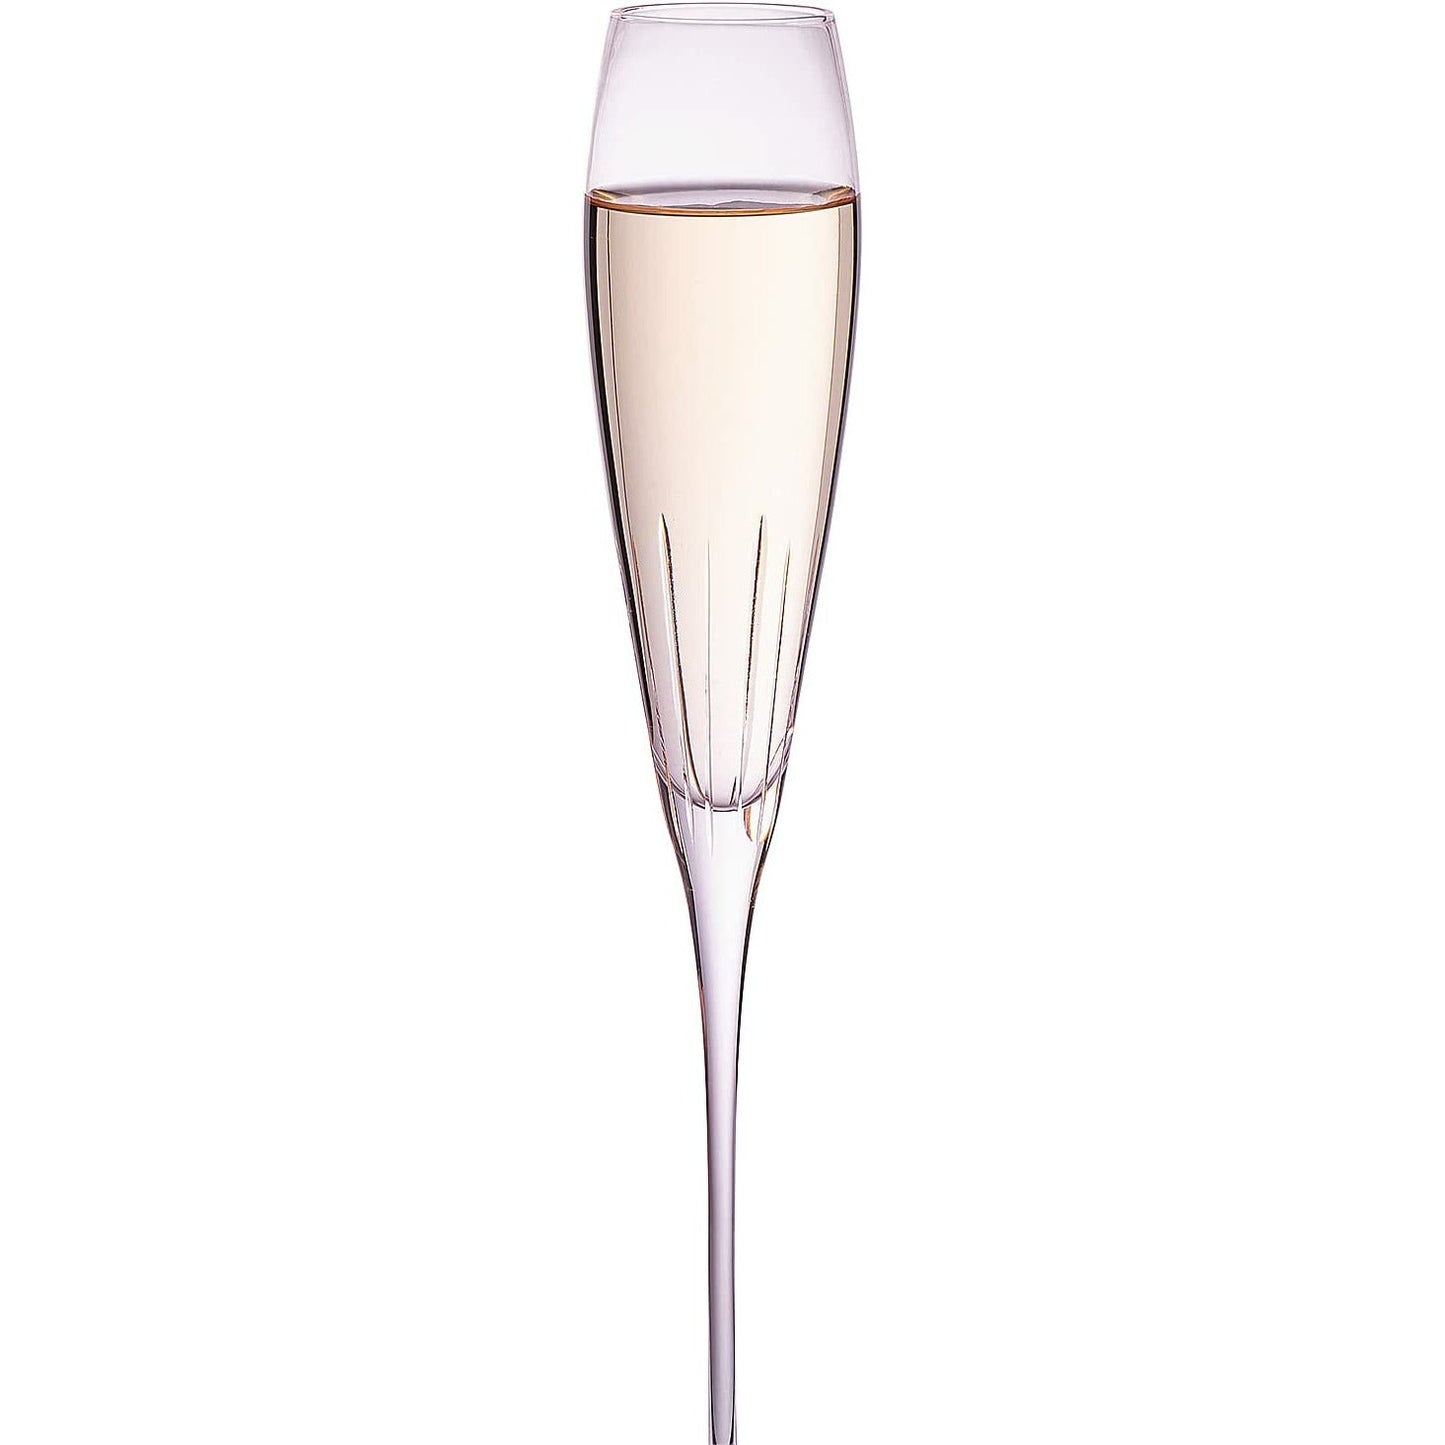 Aurora Champagne Flute, Set of 4